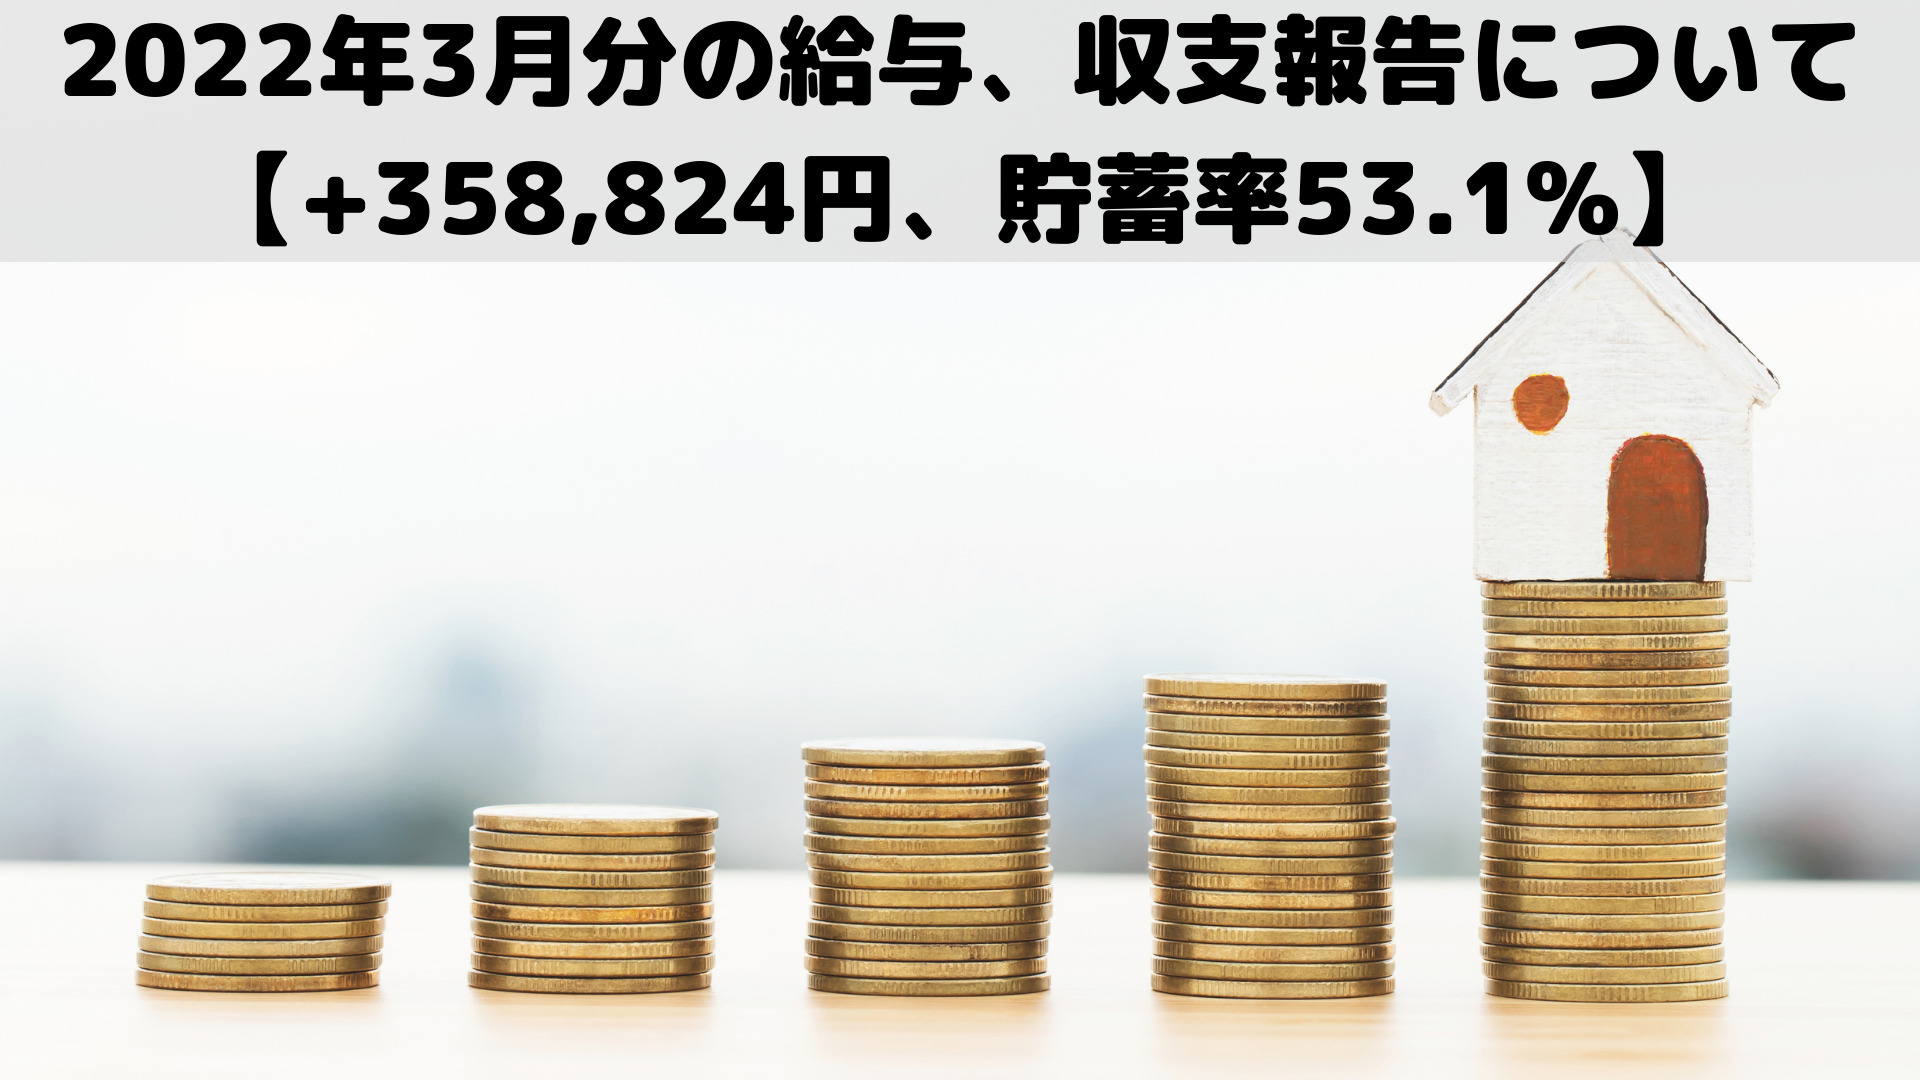 2022年3月分の給与、収支報告について【+358,824円、貯蓄率53.1%】